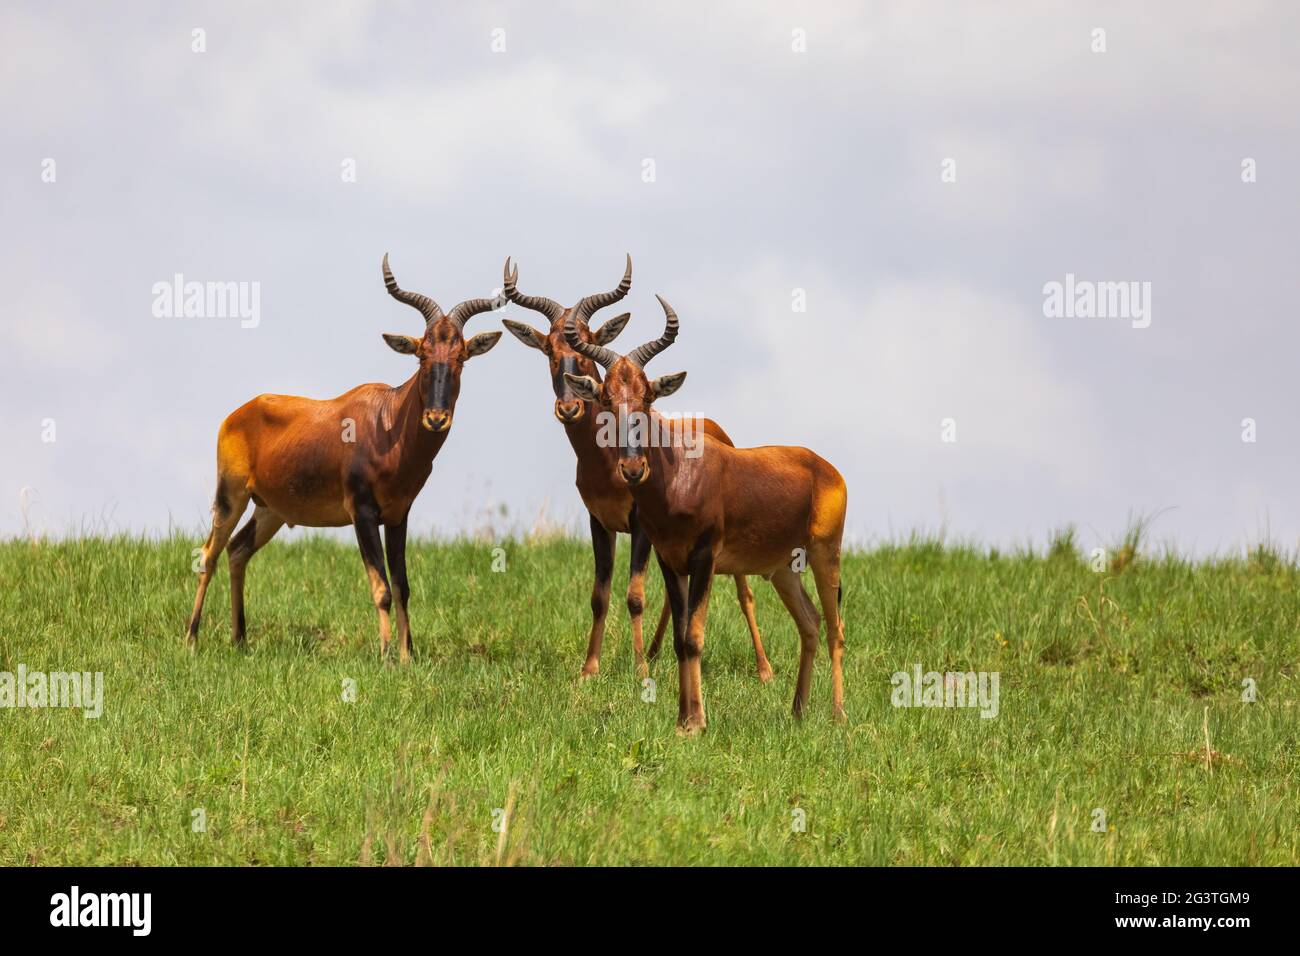 Swayne's Hartebeest antelope, Ethiopia wildlife Stock Photo